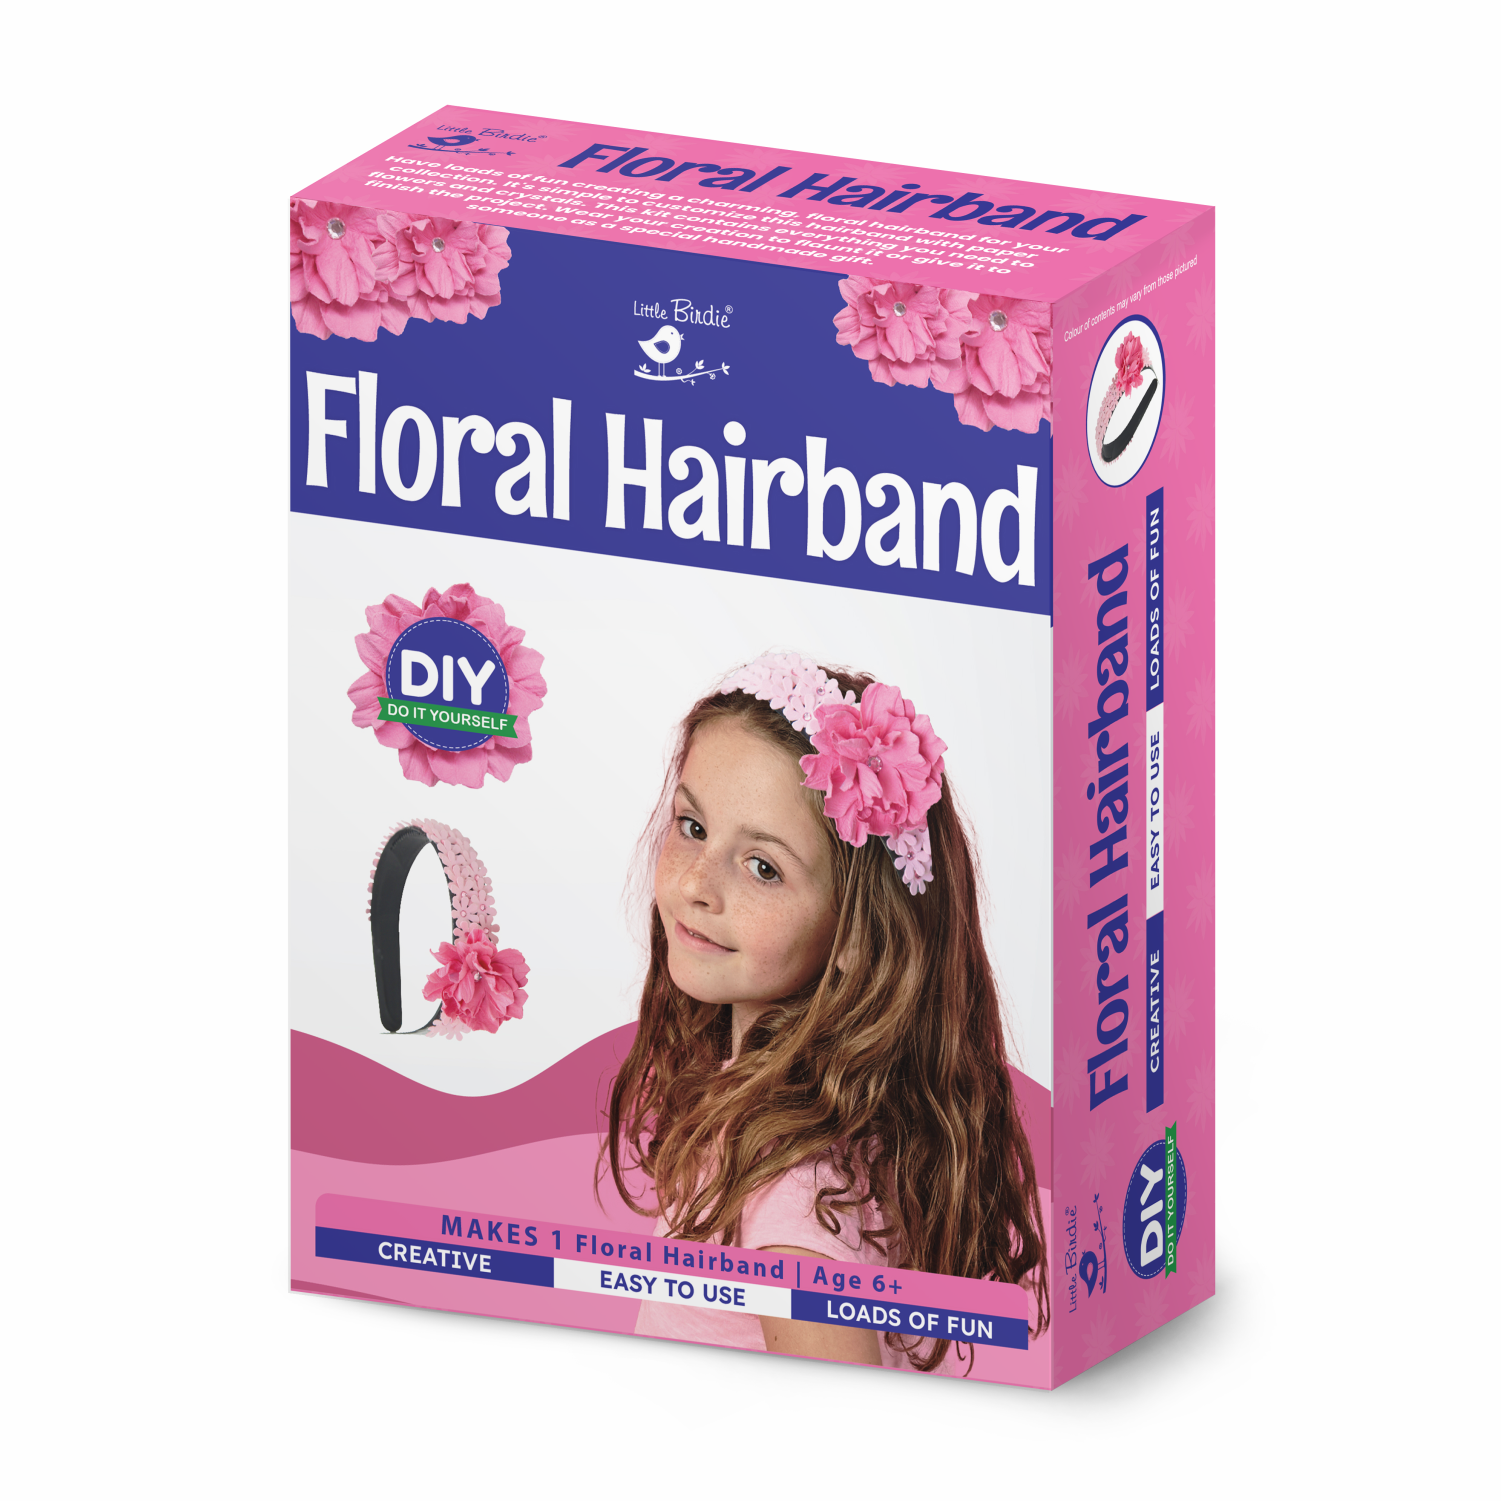 DIY Floral Hairband Making Kit